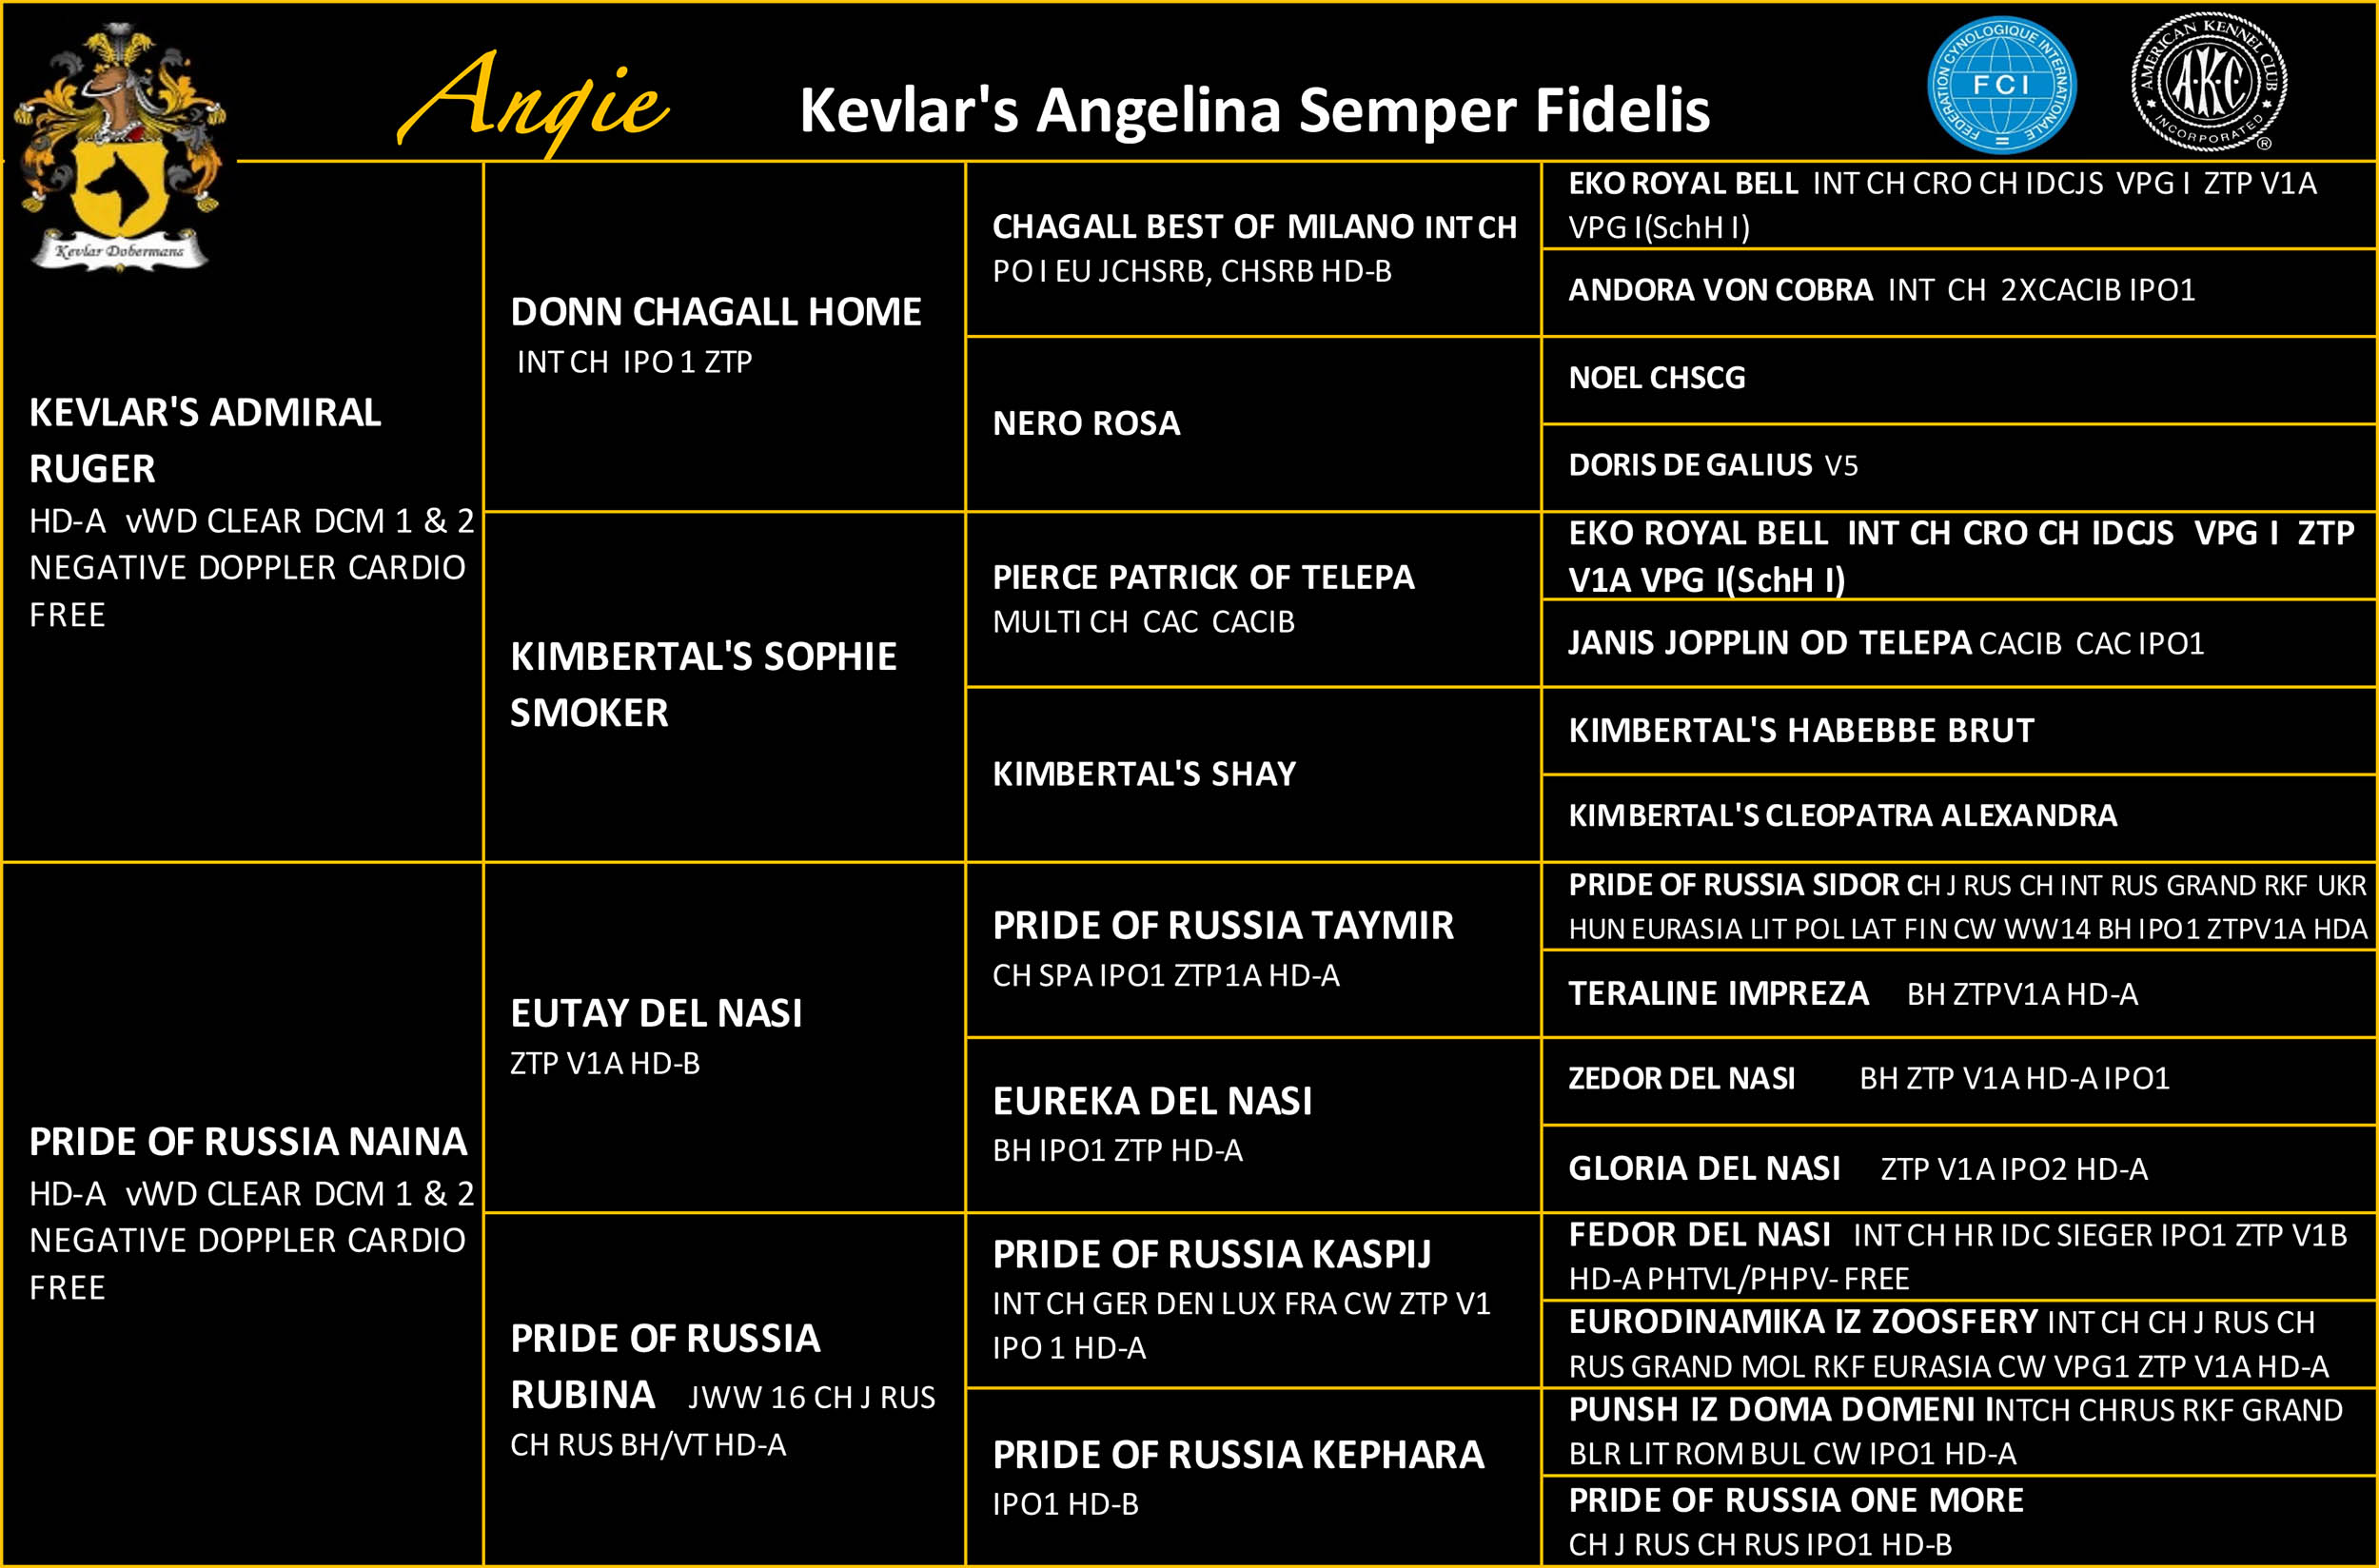 Kevlar's Angelina Semper Fidelis